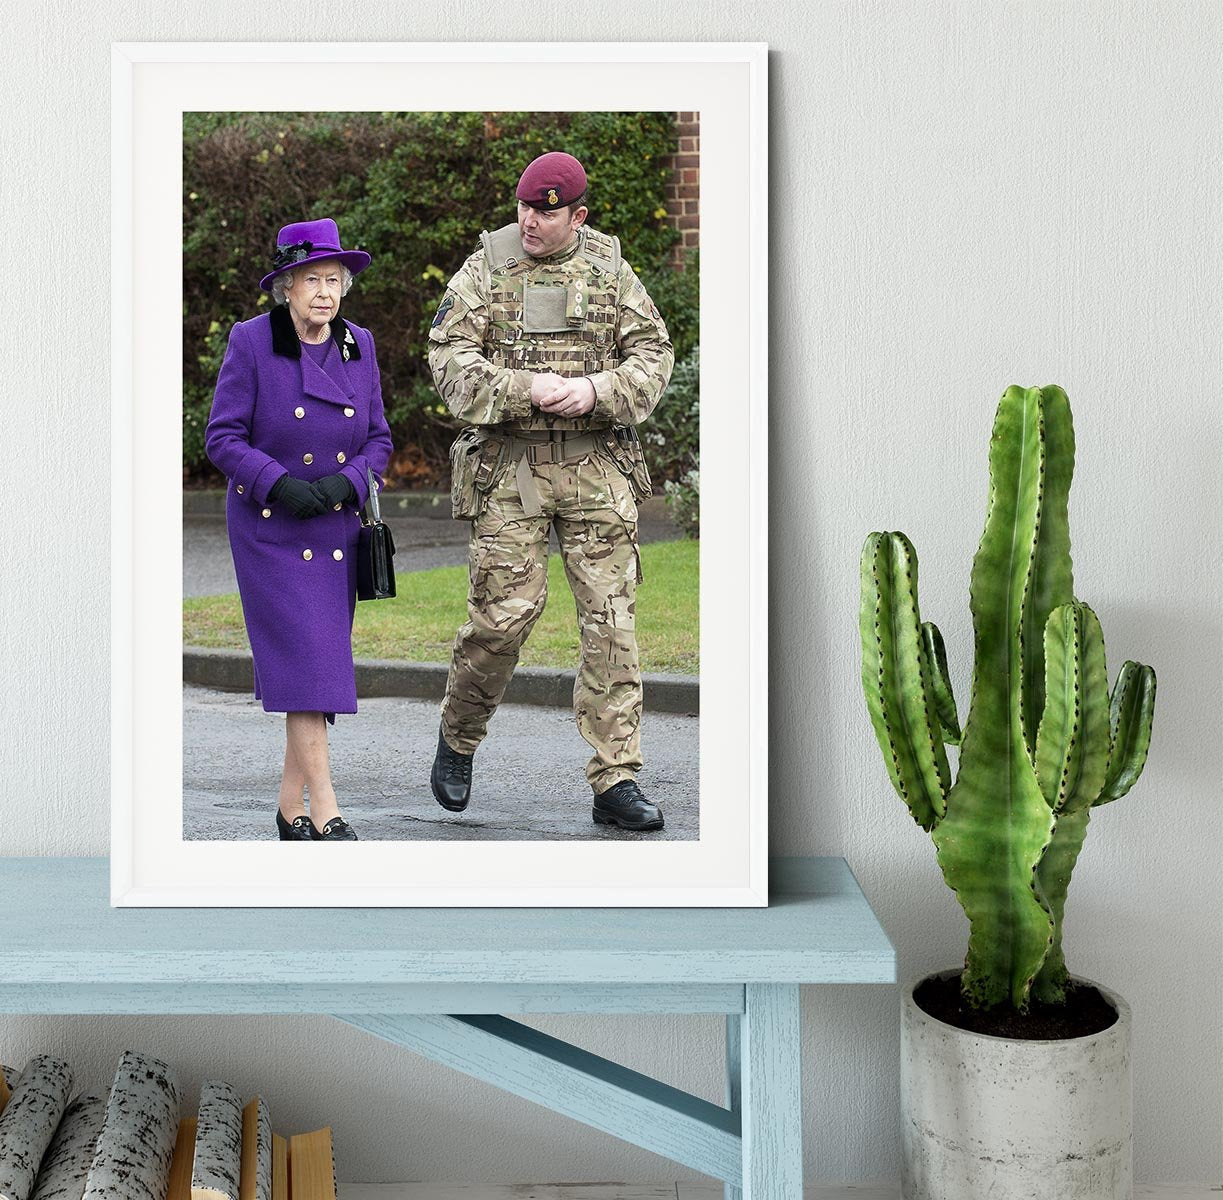 Queen Elizabeth II meeting members of the Household Cavalry Framed Print - Canvas Art Rocks - 5